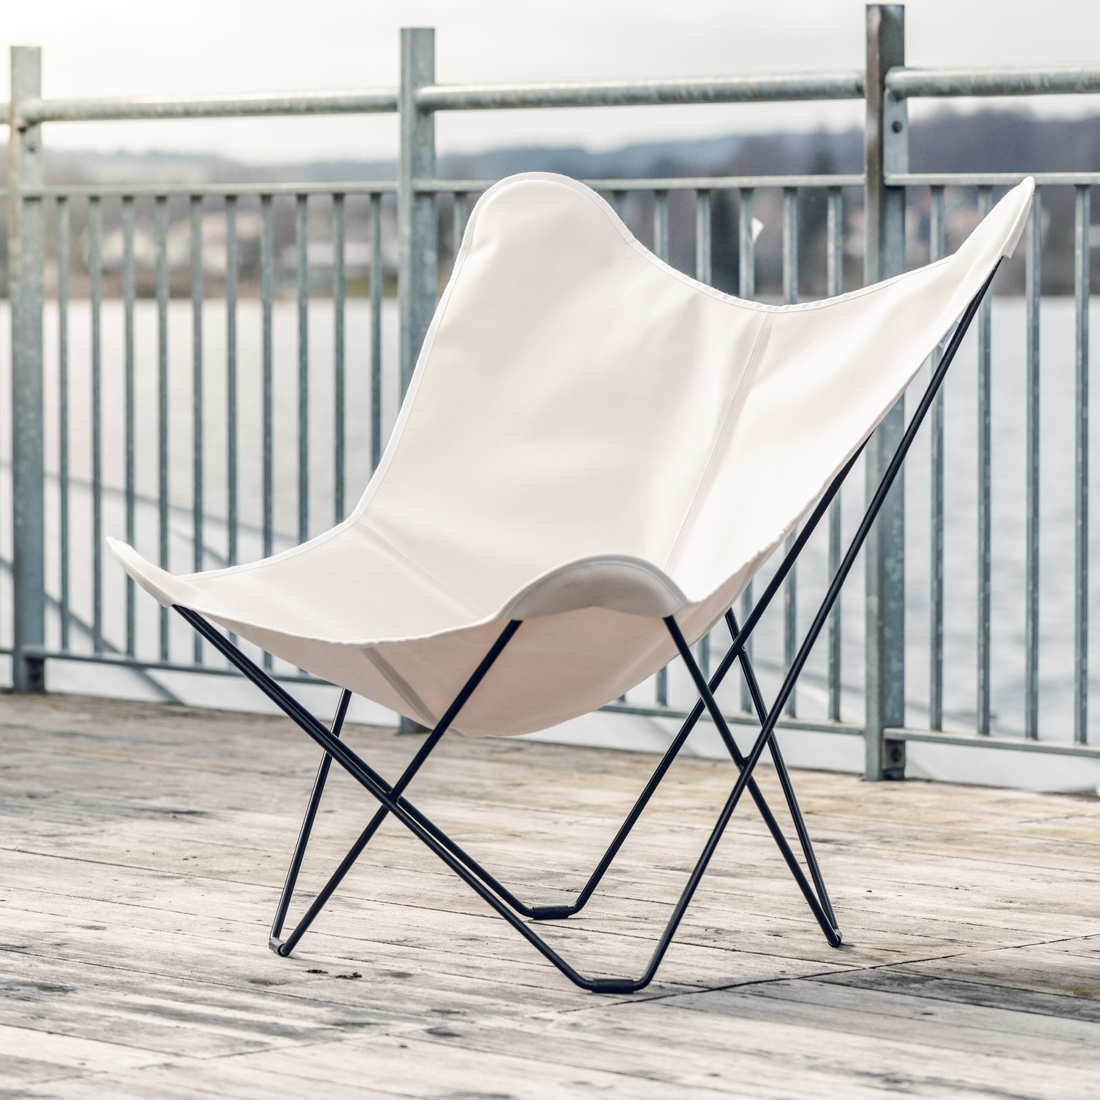 CUERODESIGN Outdoorsessel Sunshine Mariposa Oyster natur mit schwarzem Stahlgestell und Sunbrella-Textil